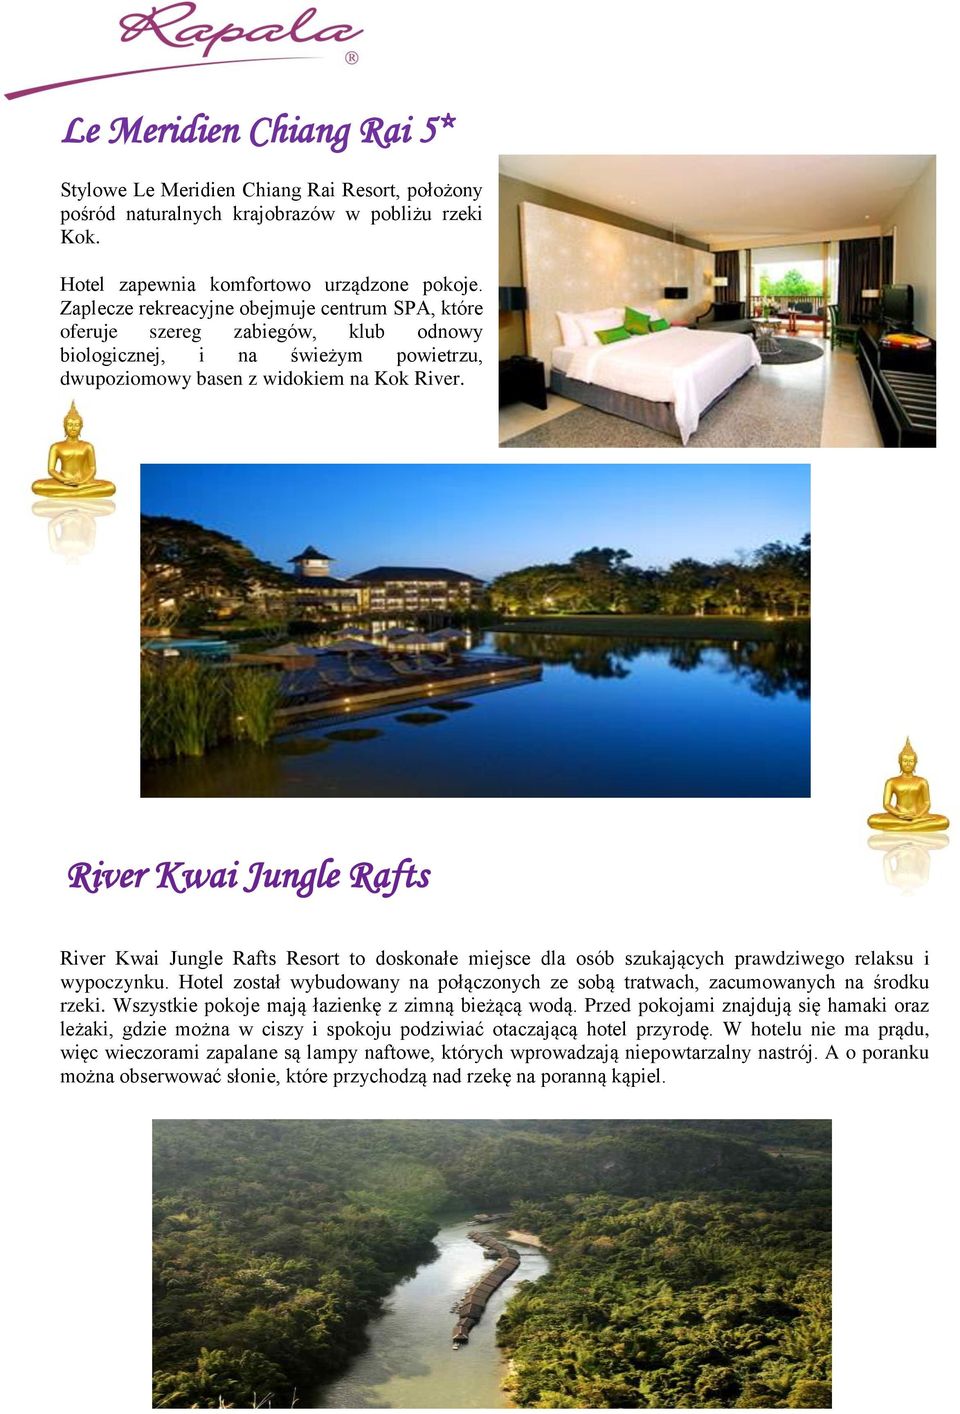 River Kwai Jungle Rafts River Kwai Jungle Rafts Resort to doskonałe miejsce dla osób szukających prawdziwego relaksu i wypoczynku.